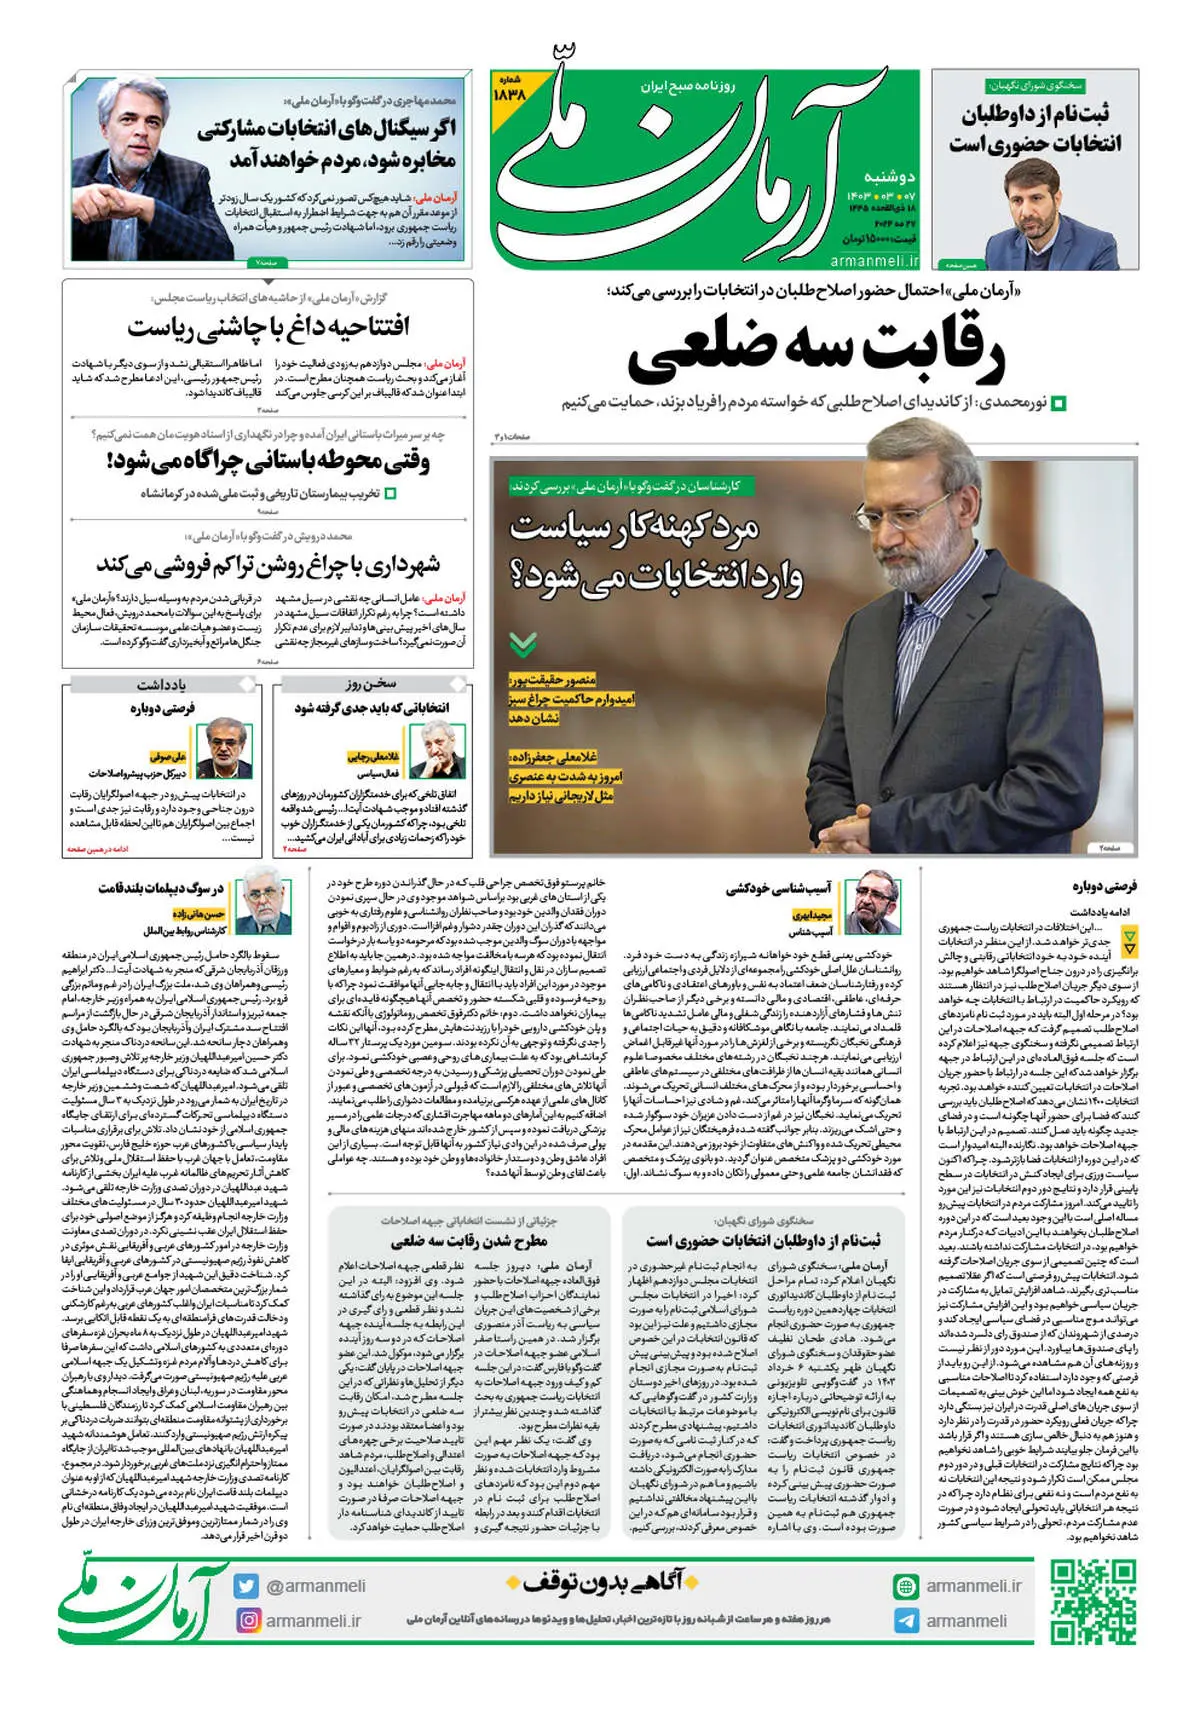 روزنامه آرمان ملی - دوشنبه 7 خرداد - شماره 1838